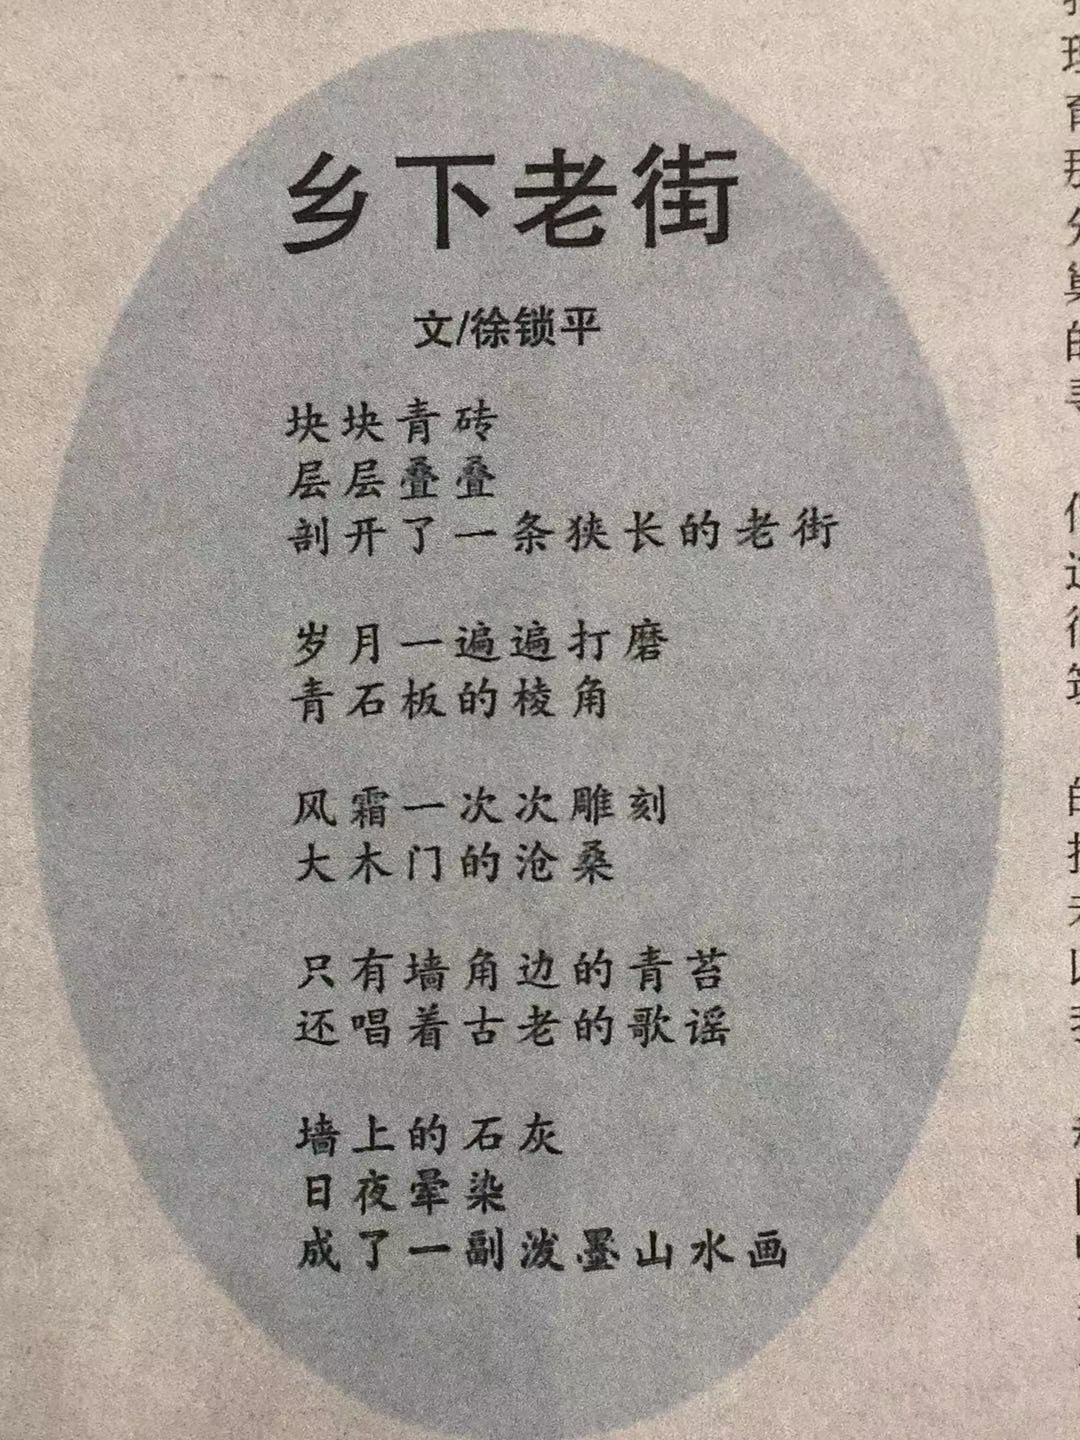 徐锁平《乡下老街》发表在2019年《金坛时报》上.jpg